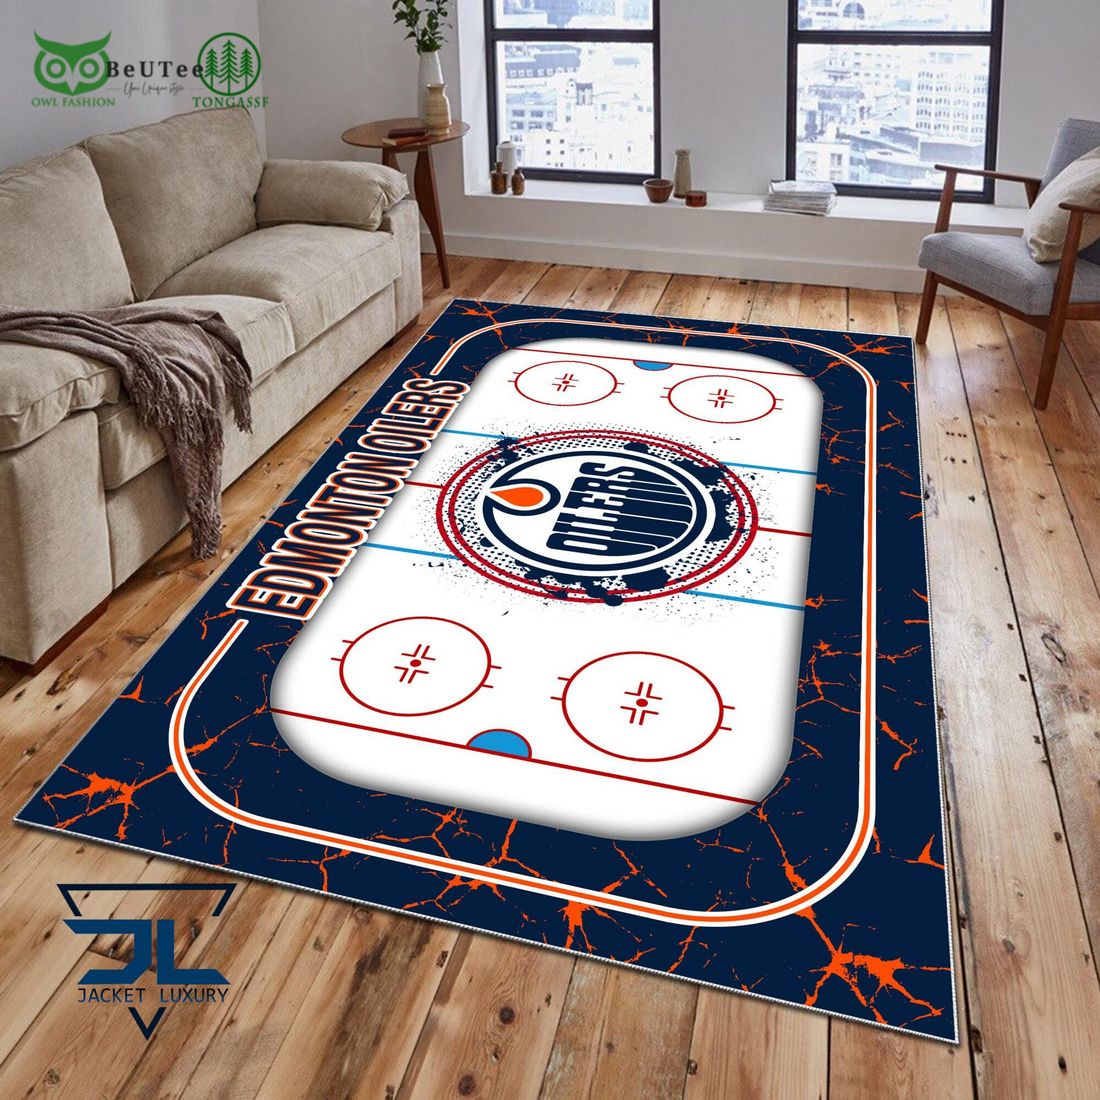 edmonton oilers nhl hockey team carpet rug 1 41P4F